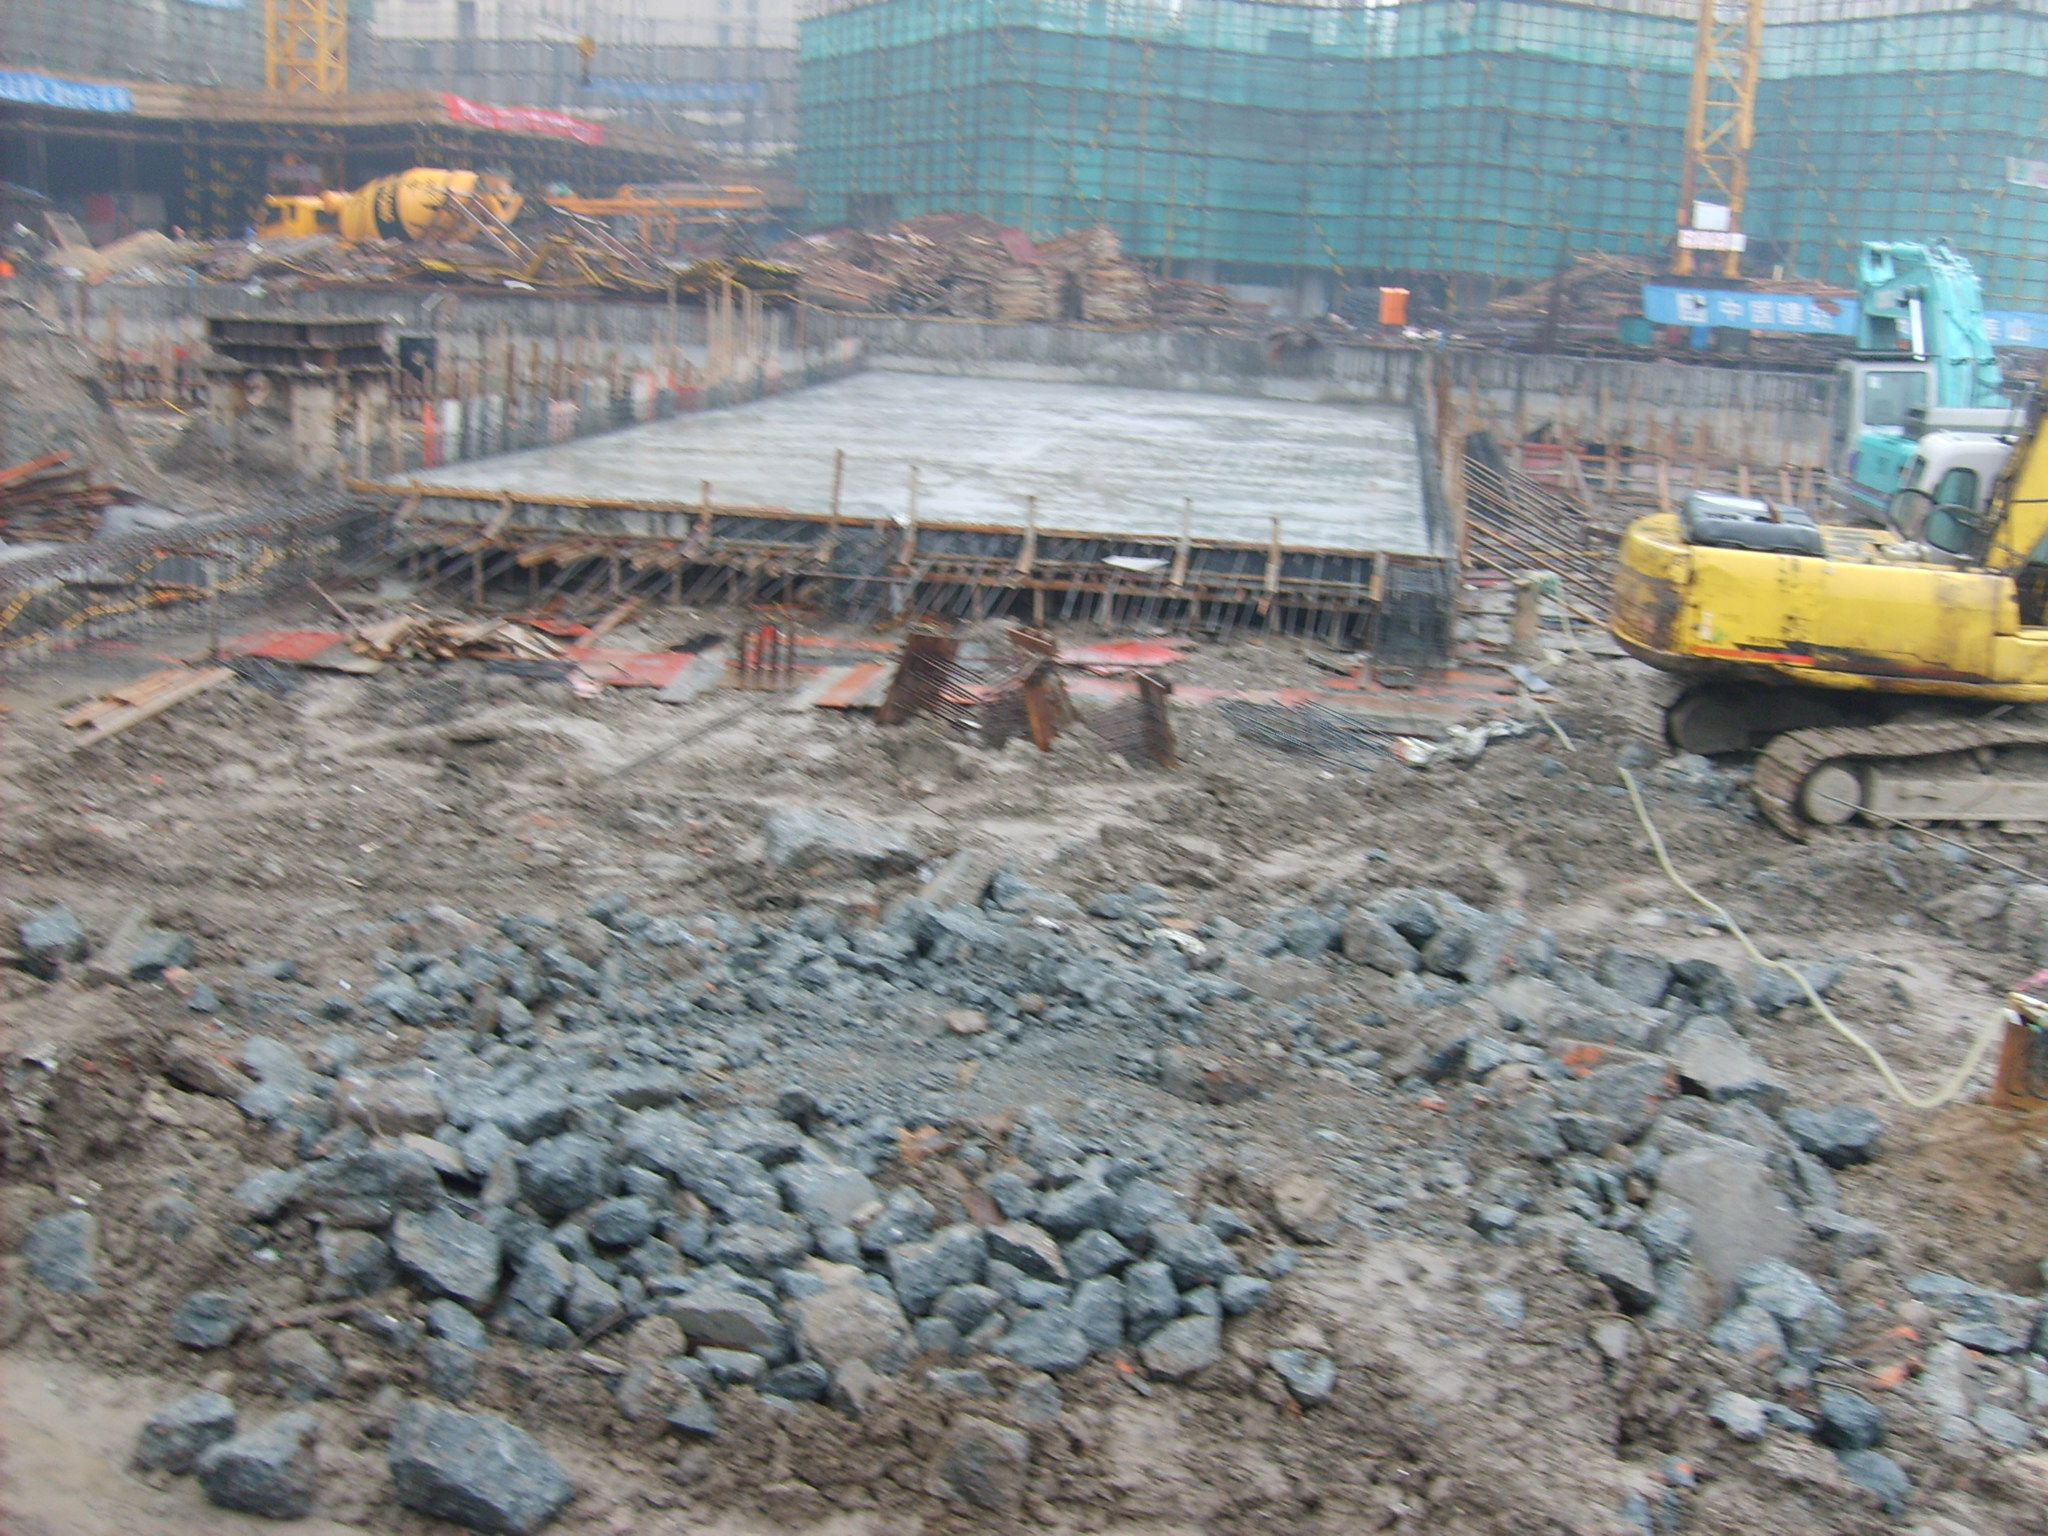 建筑深基坑开挖工艺 高质量施工 - 八方资源网